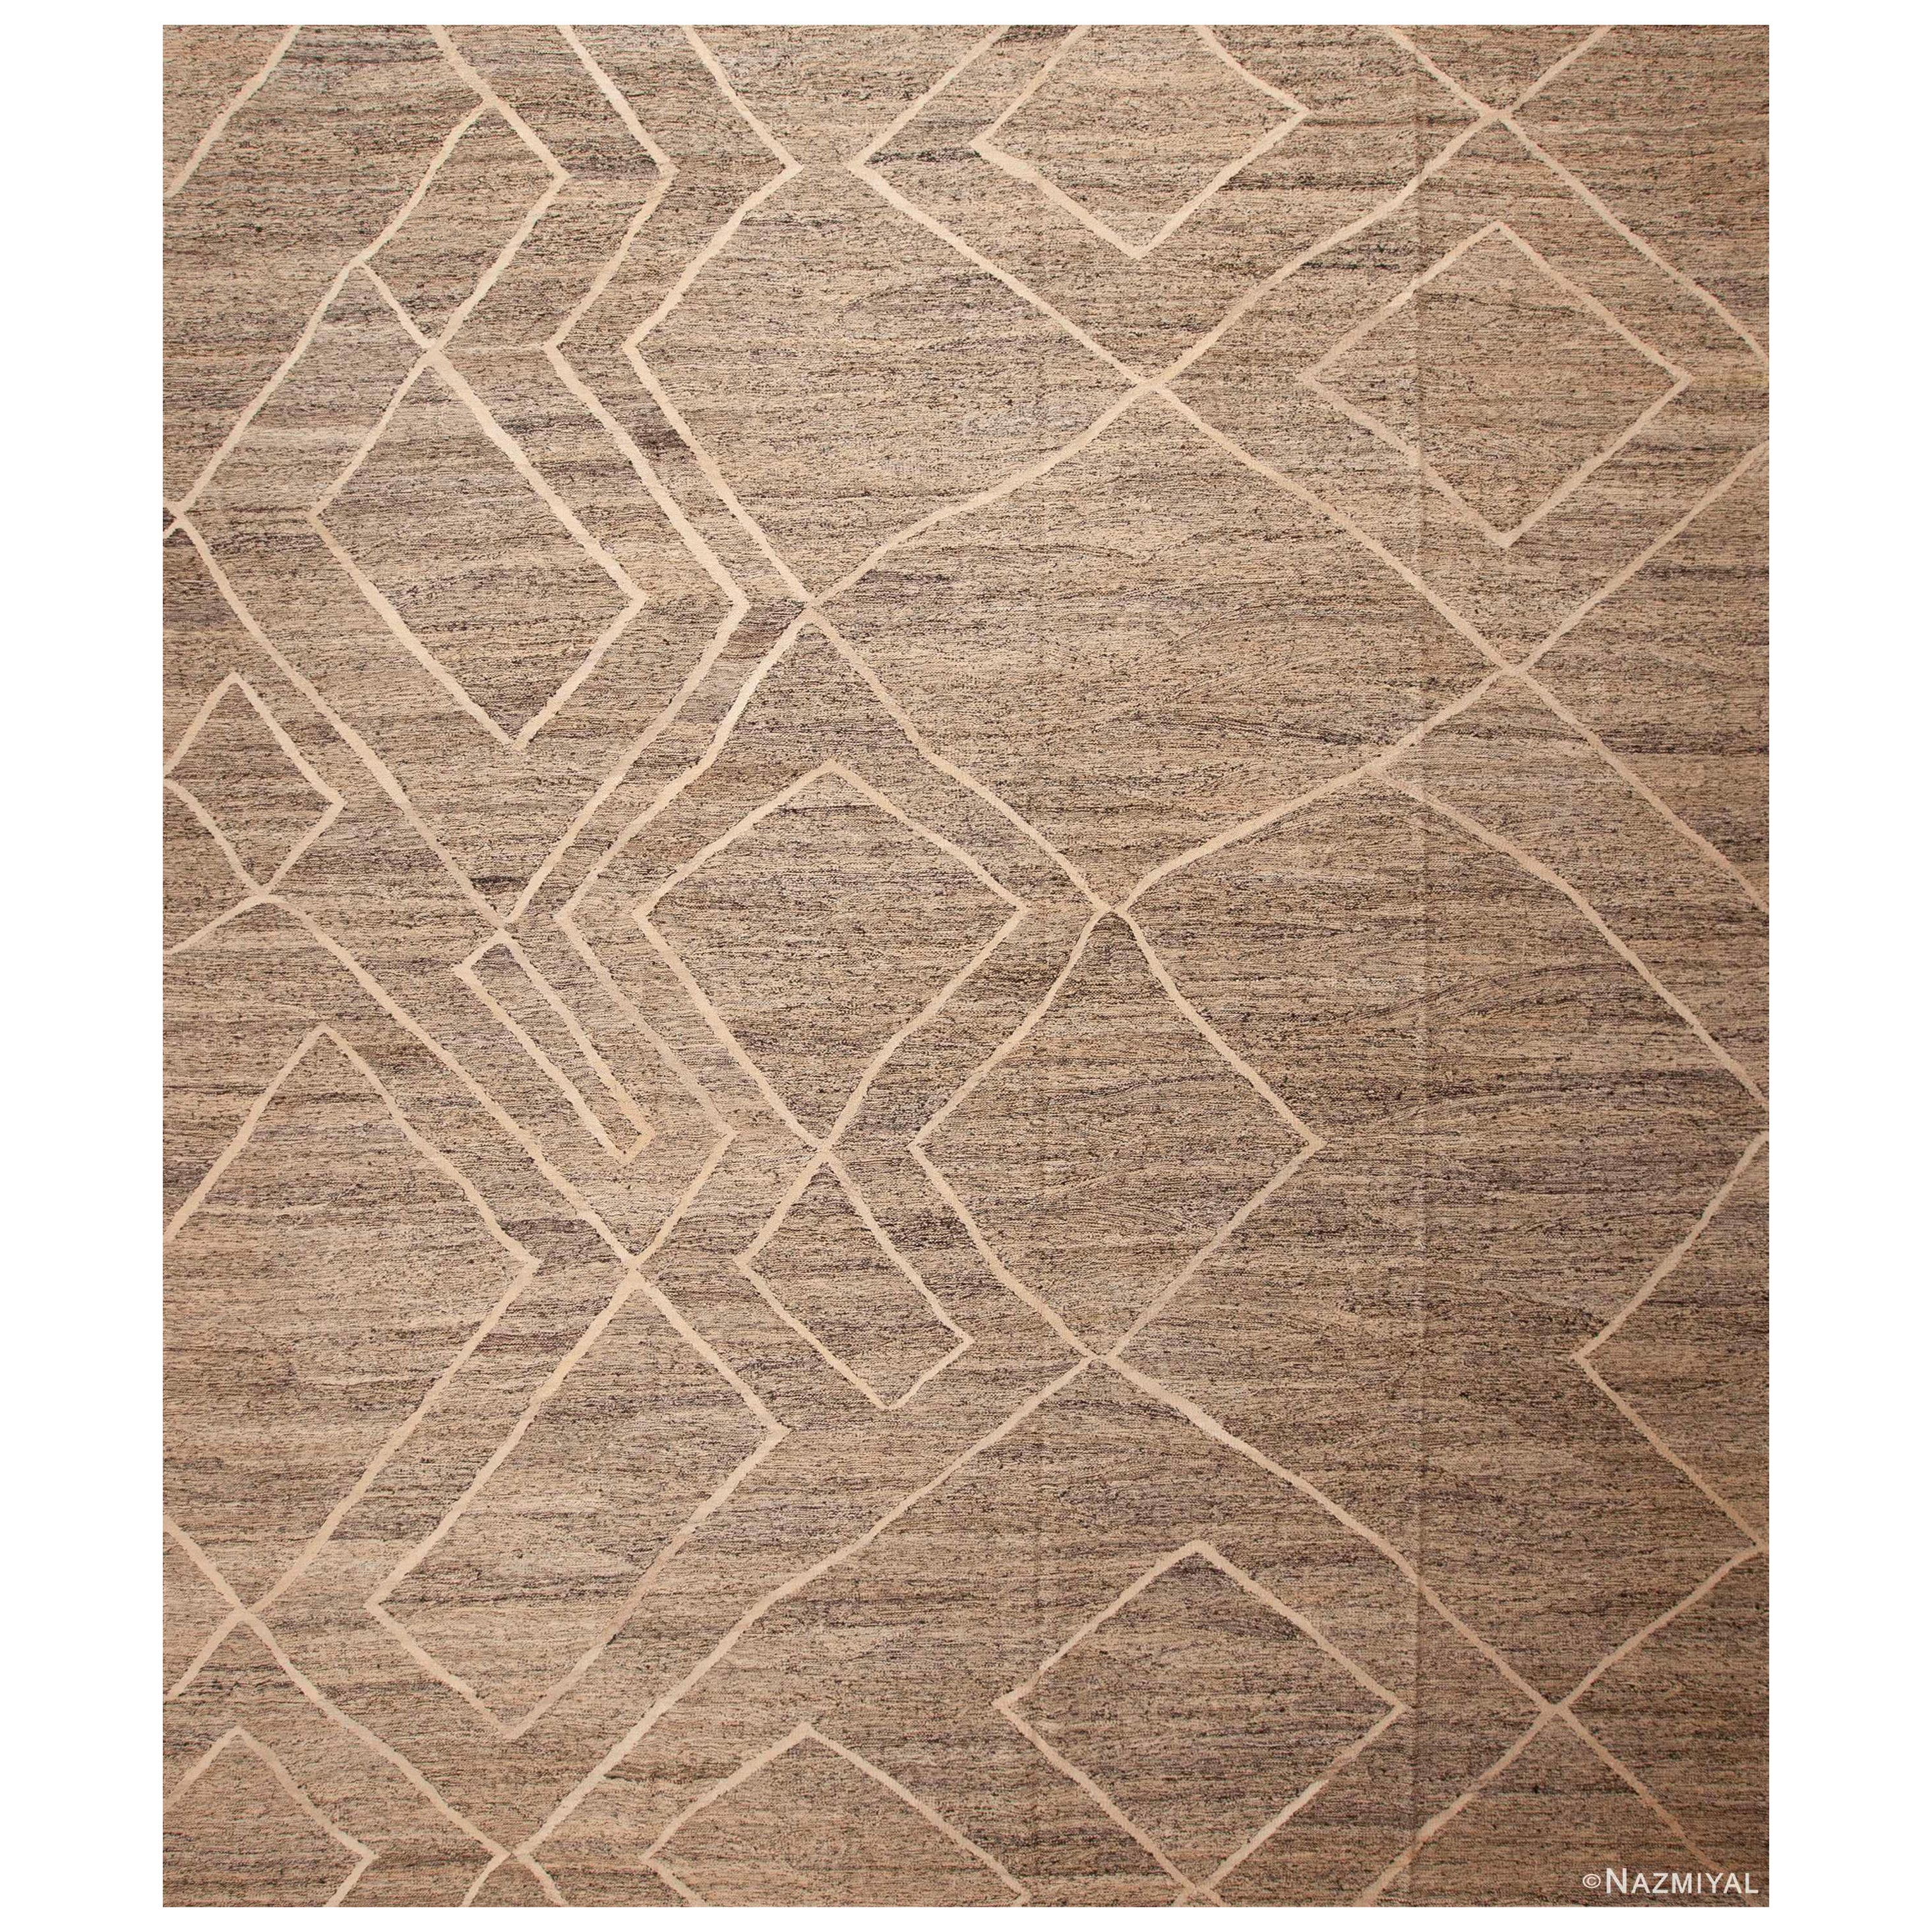 Collection Nazmiyal Tapis Kilim tribal géométrique moderne tissé à plat 13'6" x 15'7"